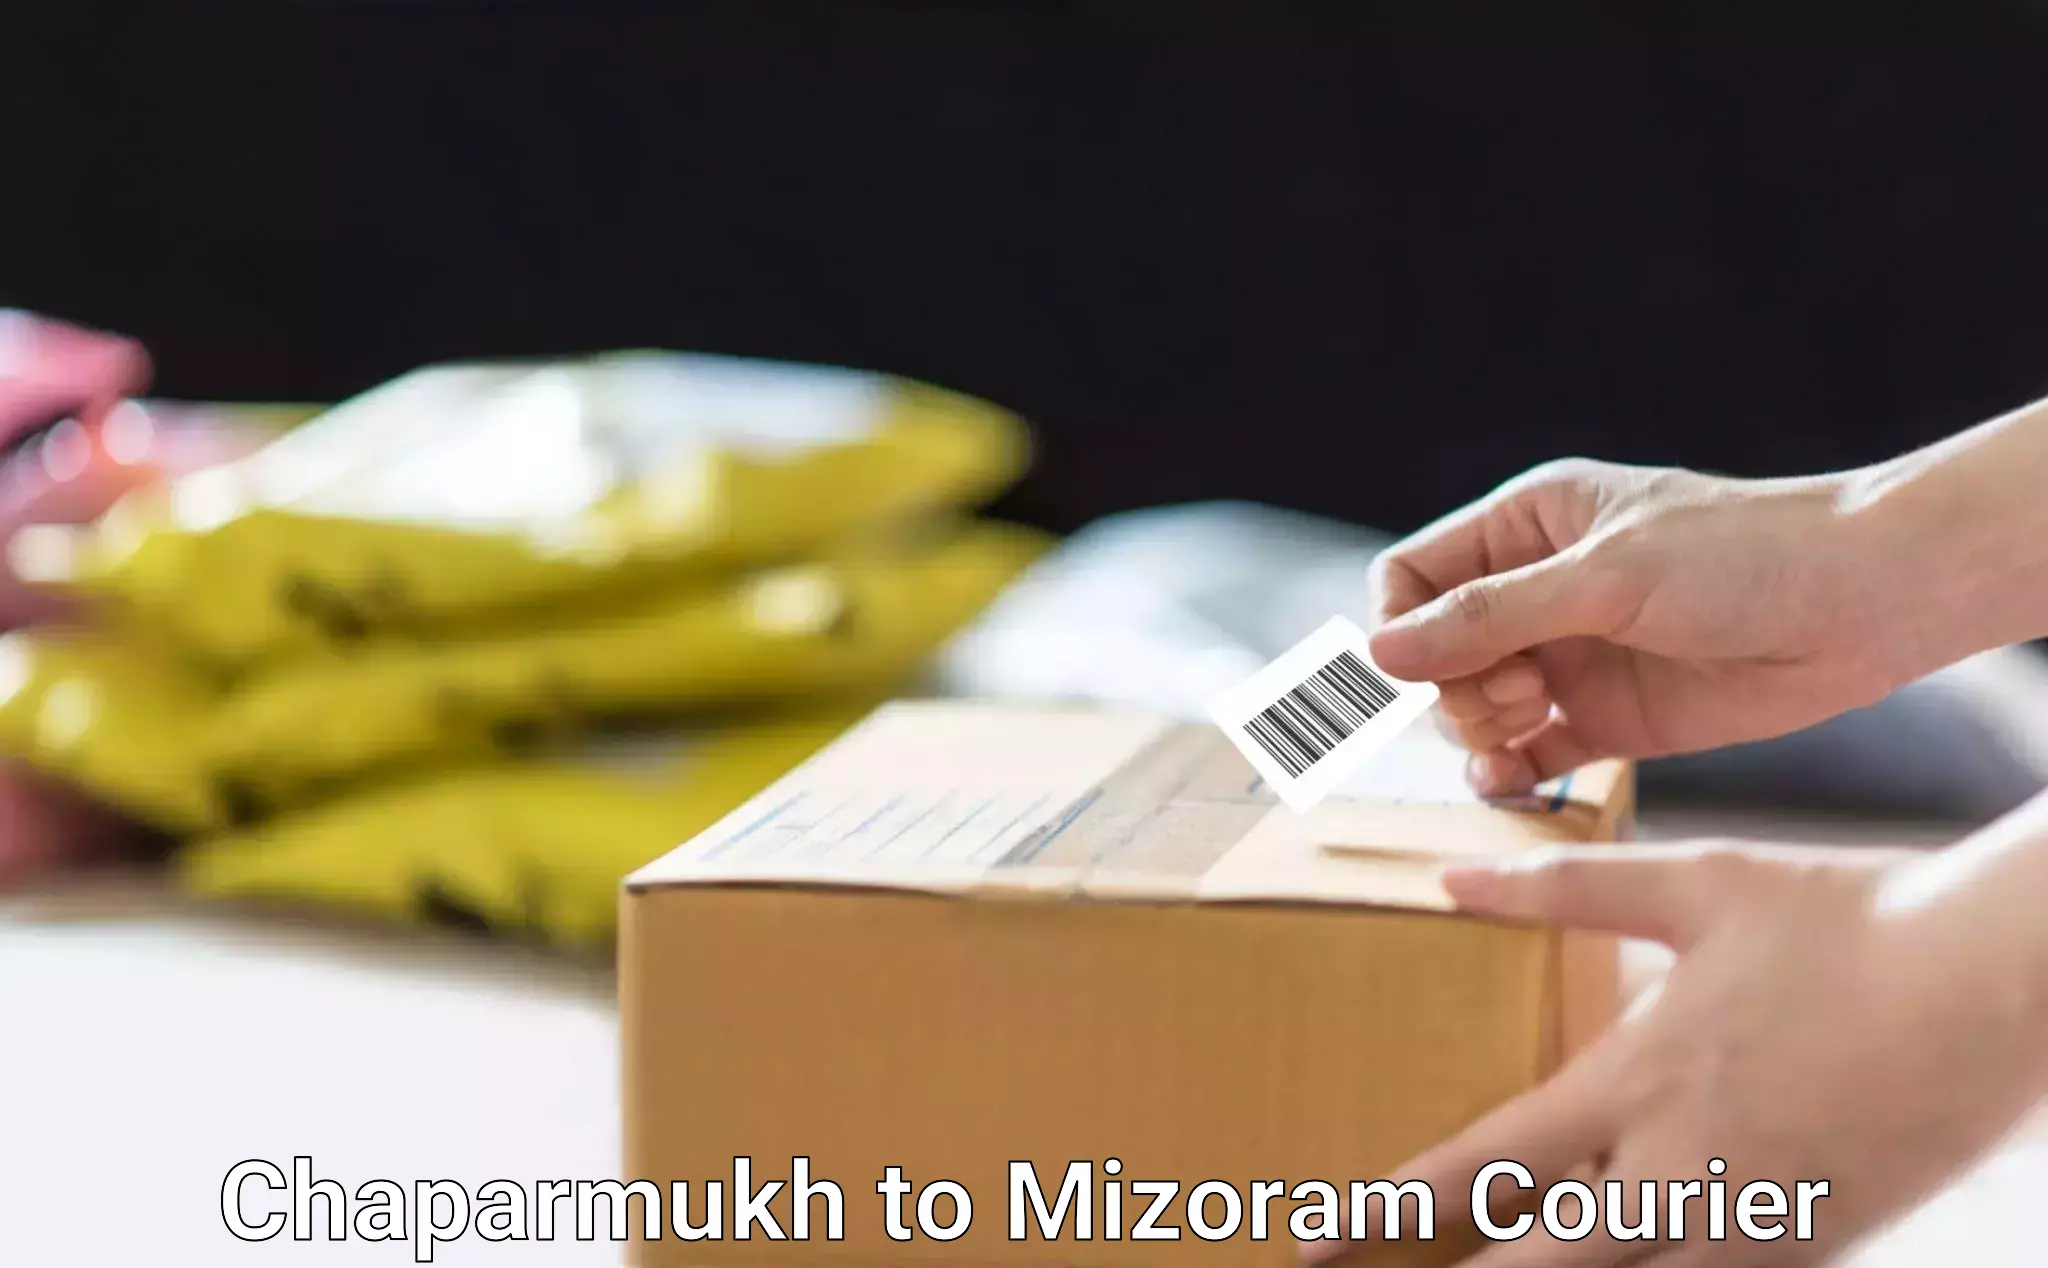 Bulk shipment Chaparmukh to Mizoram